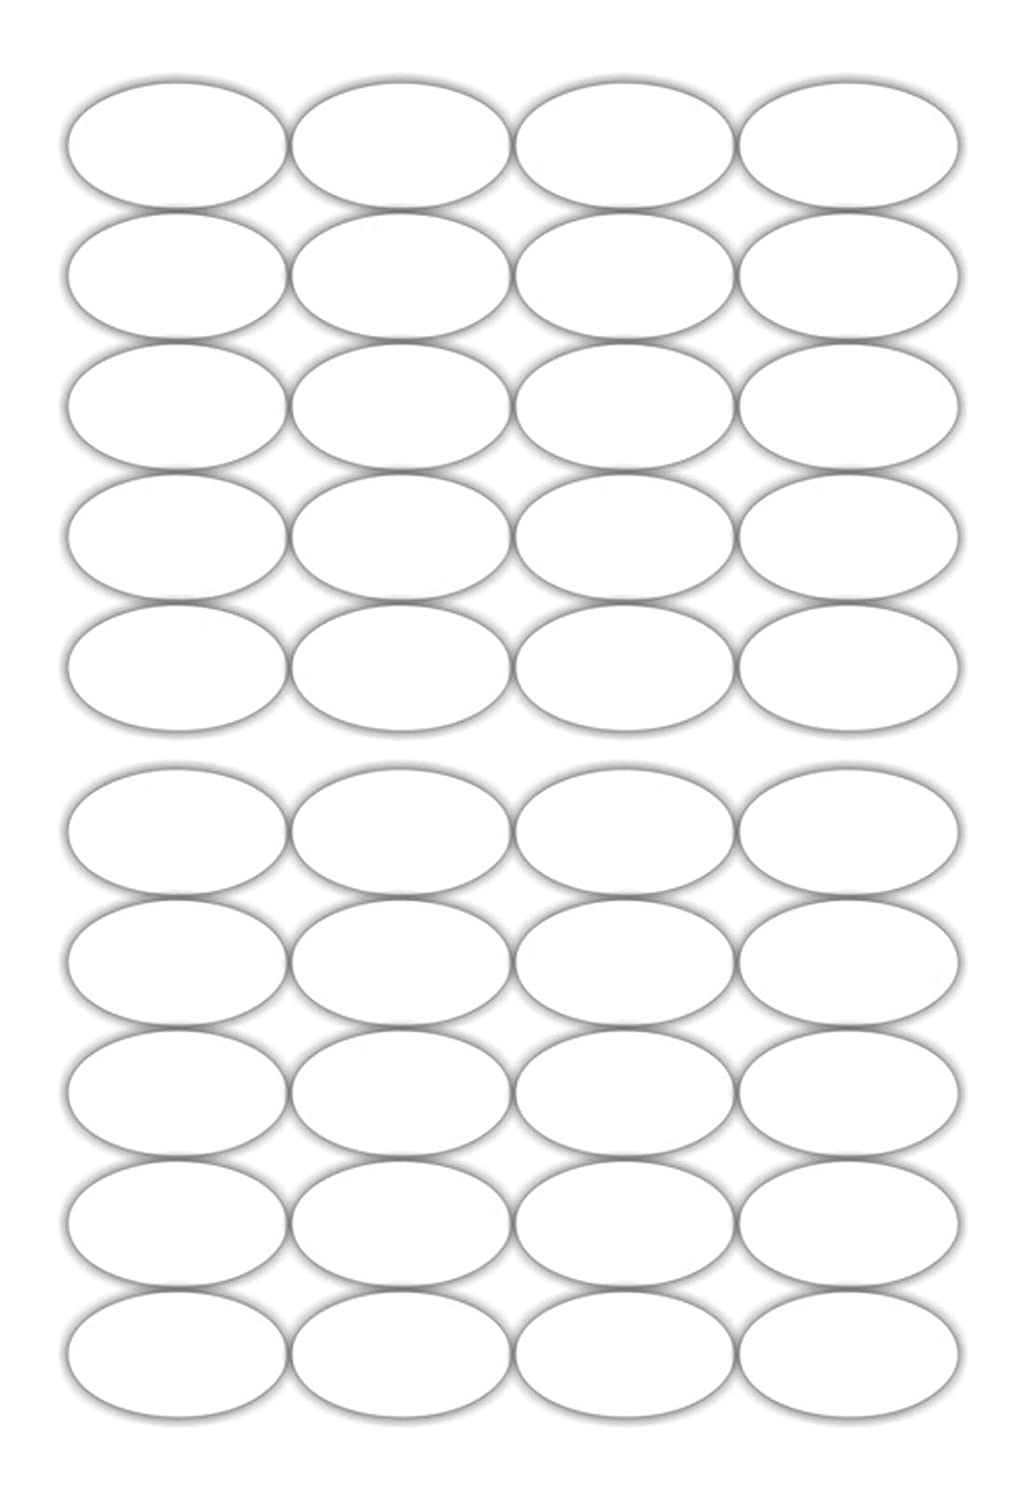 iberry's 108 pieces Waterproof Vinyl Stickers for Mason Jars Glass Bottle, Decals Craft, Kitchen Jar (Paper, 7 cm x 4 cm, White, 108 Piece) (Oval Sticker) (11)